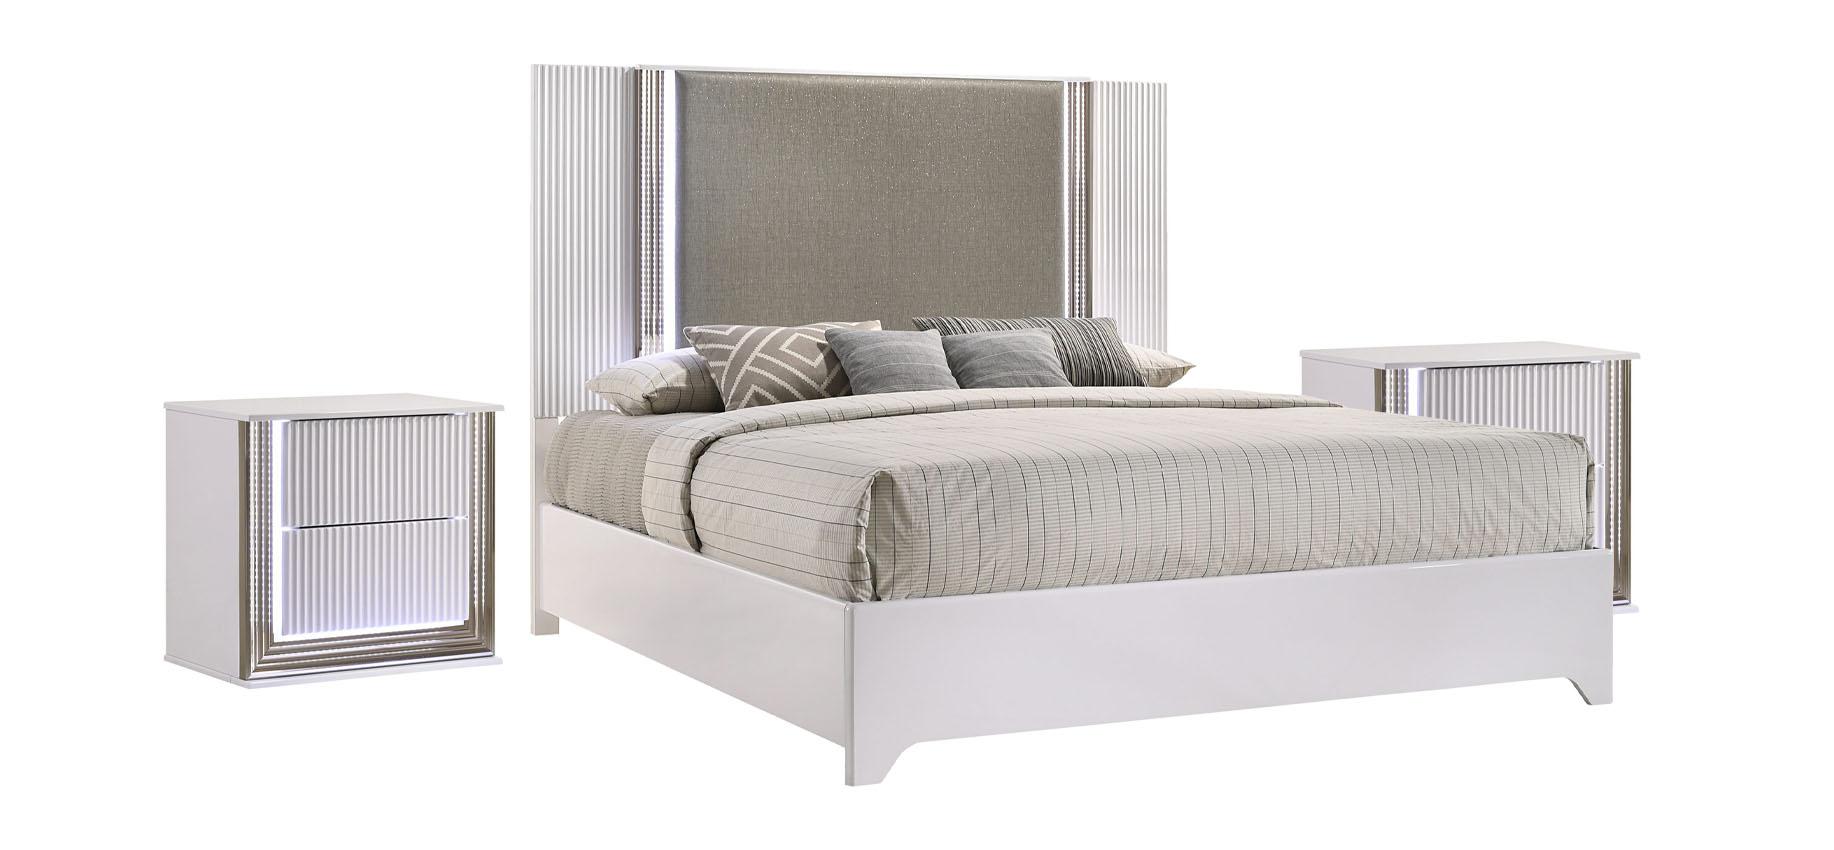 Modern Platform Bedroom Set ASPEN ASPEN-WHITE-KB-Set-3 in White Faux Leather